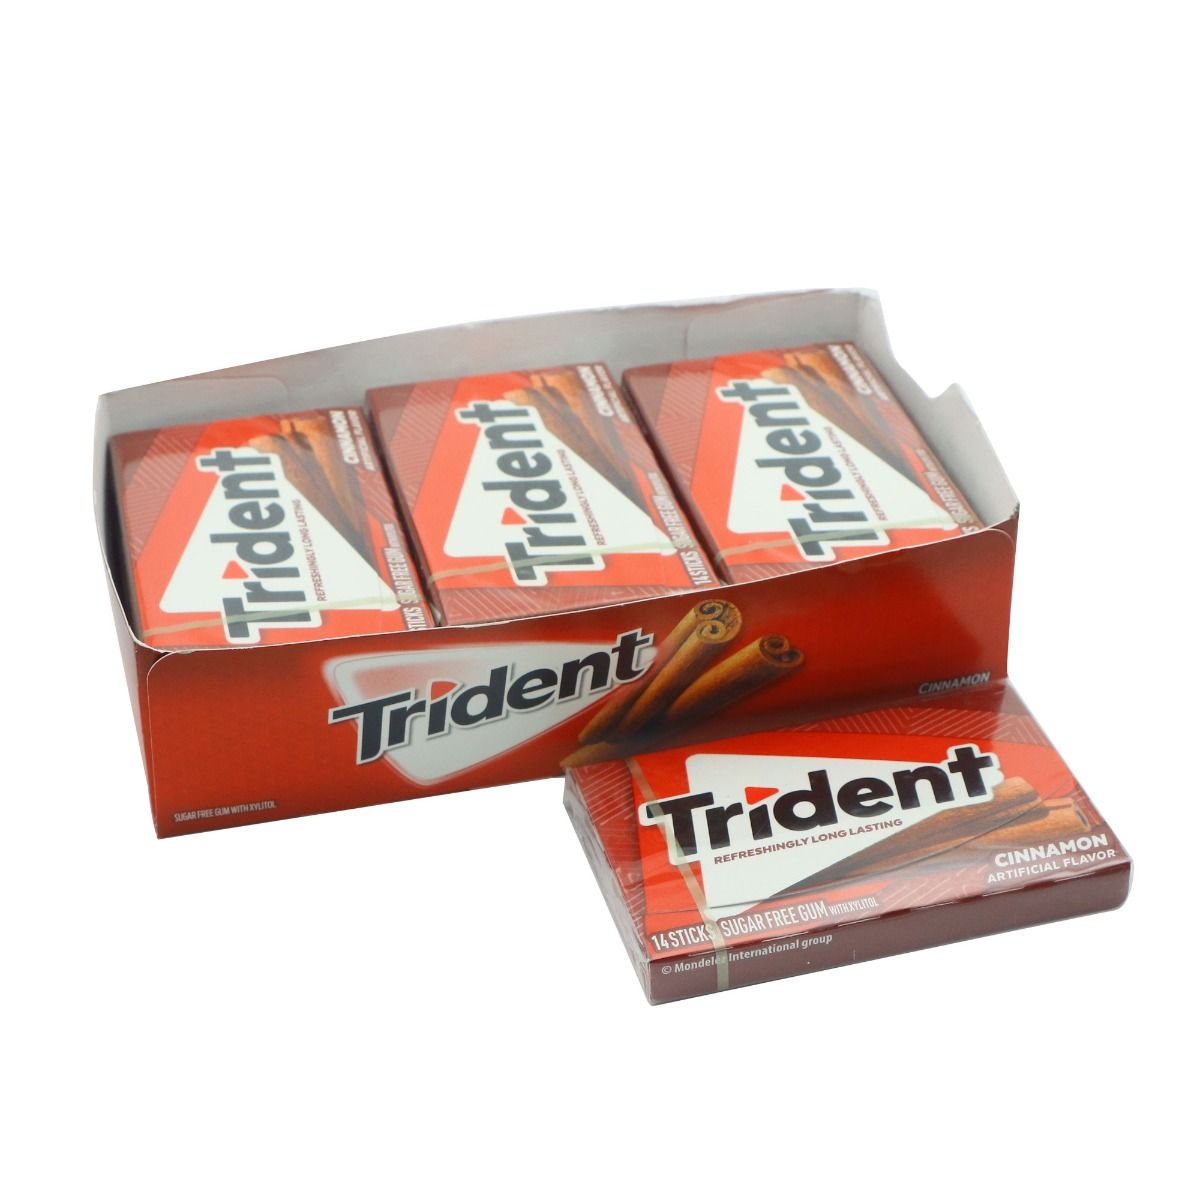 Buy Trident Sugar Free Gum Cinnamon 14 Stick Online